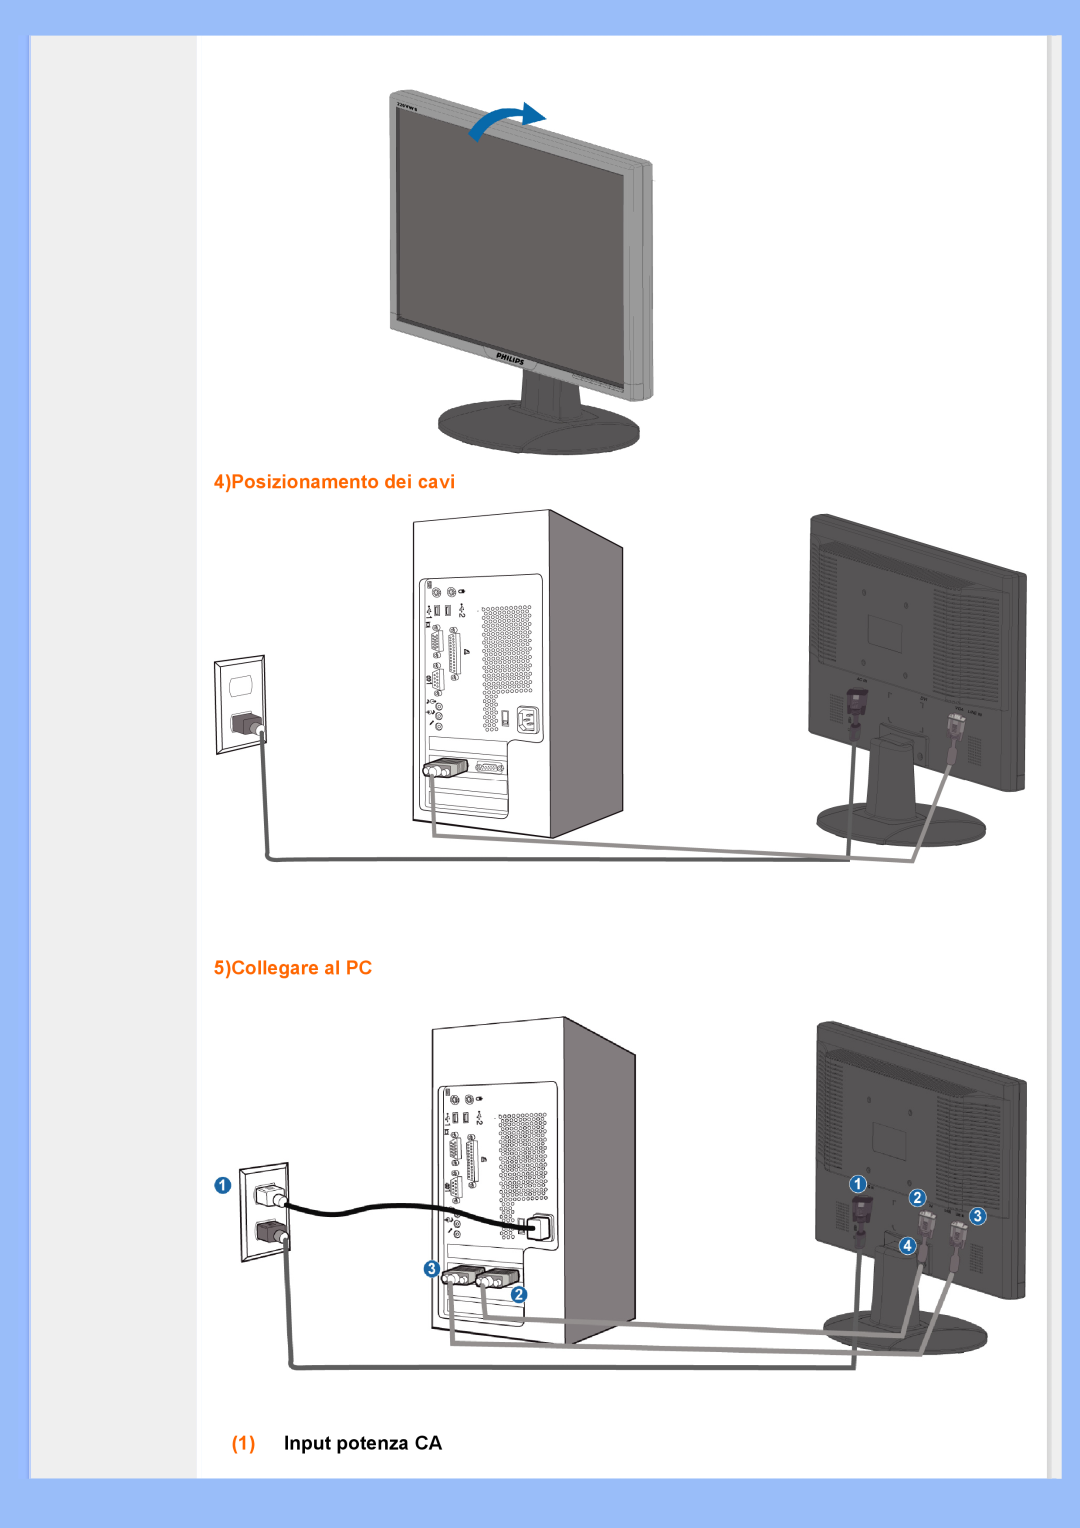 Philips 220VW8 user manual 4Posizionamento dei cavi 5Collegare al PC, 1Input potenza CA 